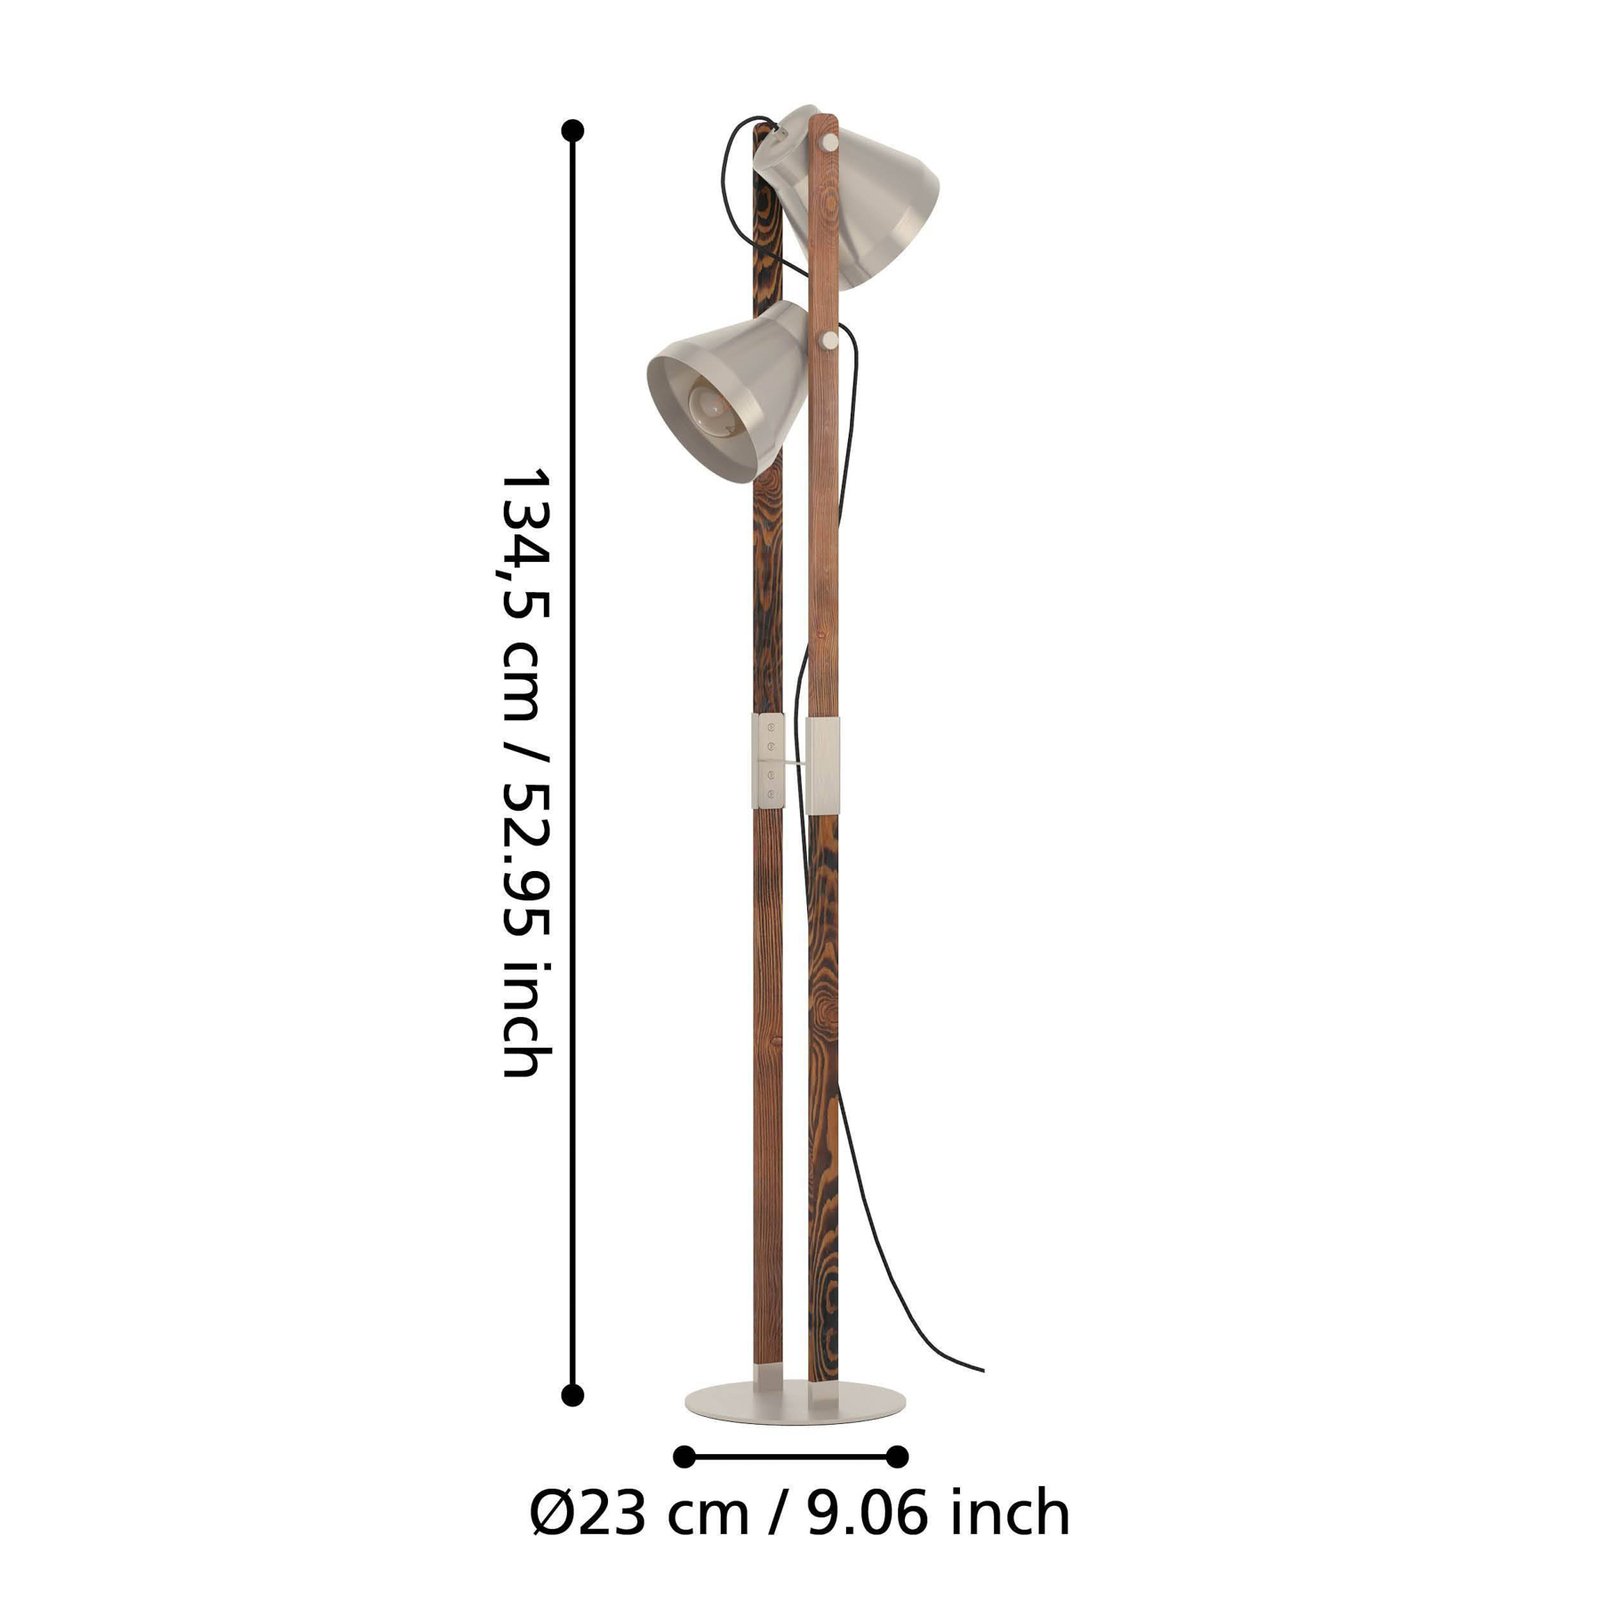 Cawton gulvlampe, høyde 134,5 cm, stål/brun, 2 lyskilder stål